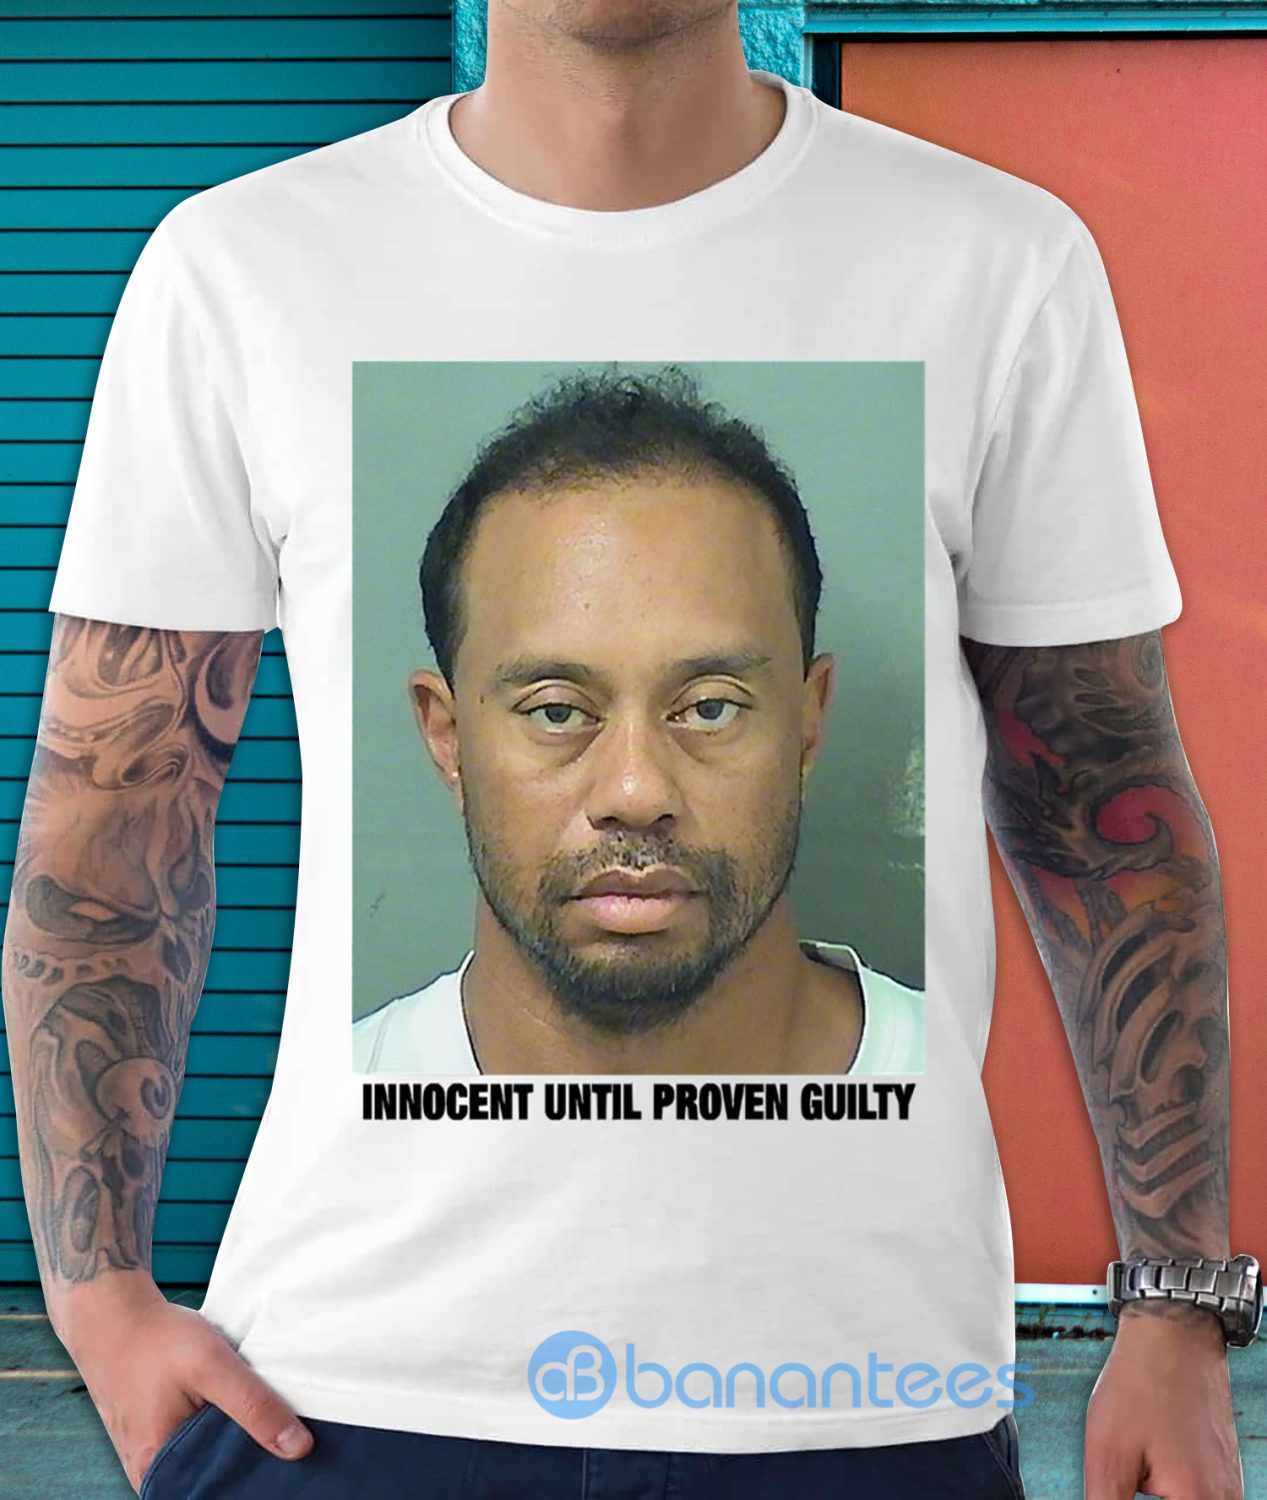 Tiger Woods mug shot Men's Black Hoodie Clothing 